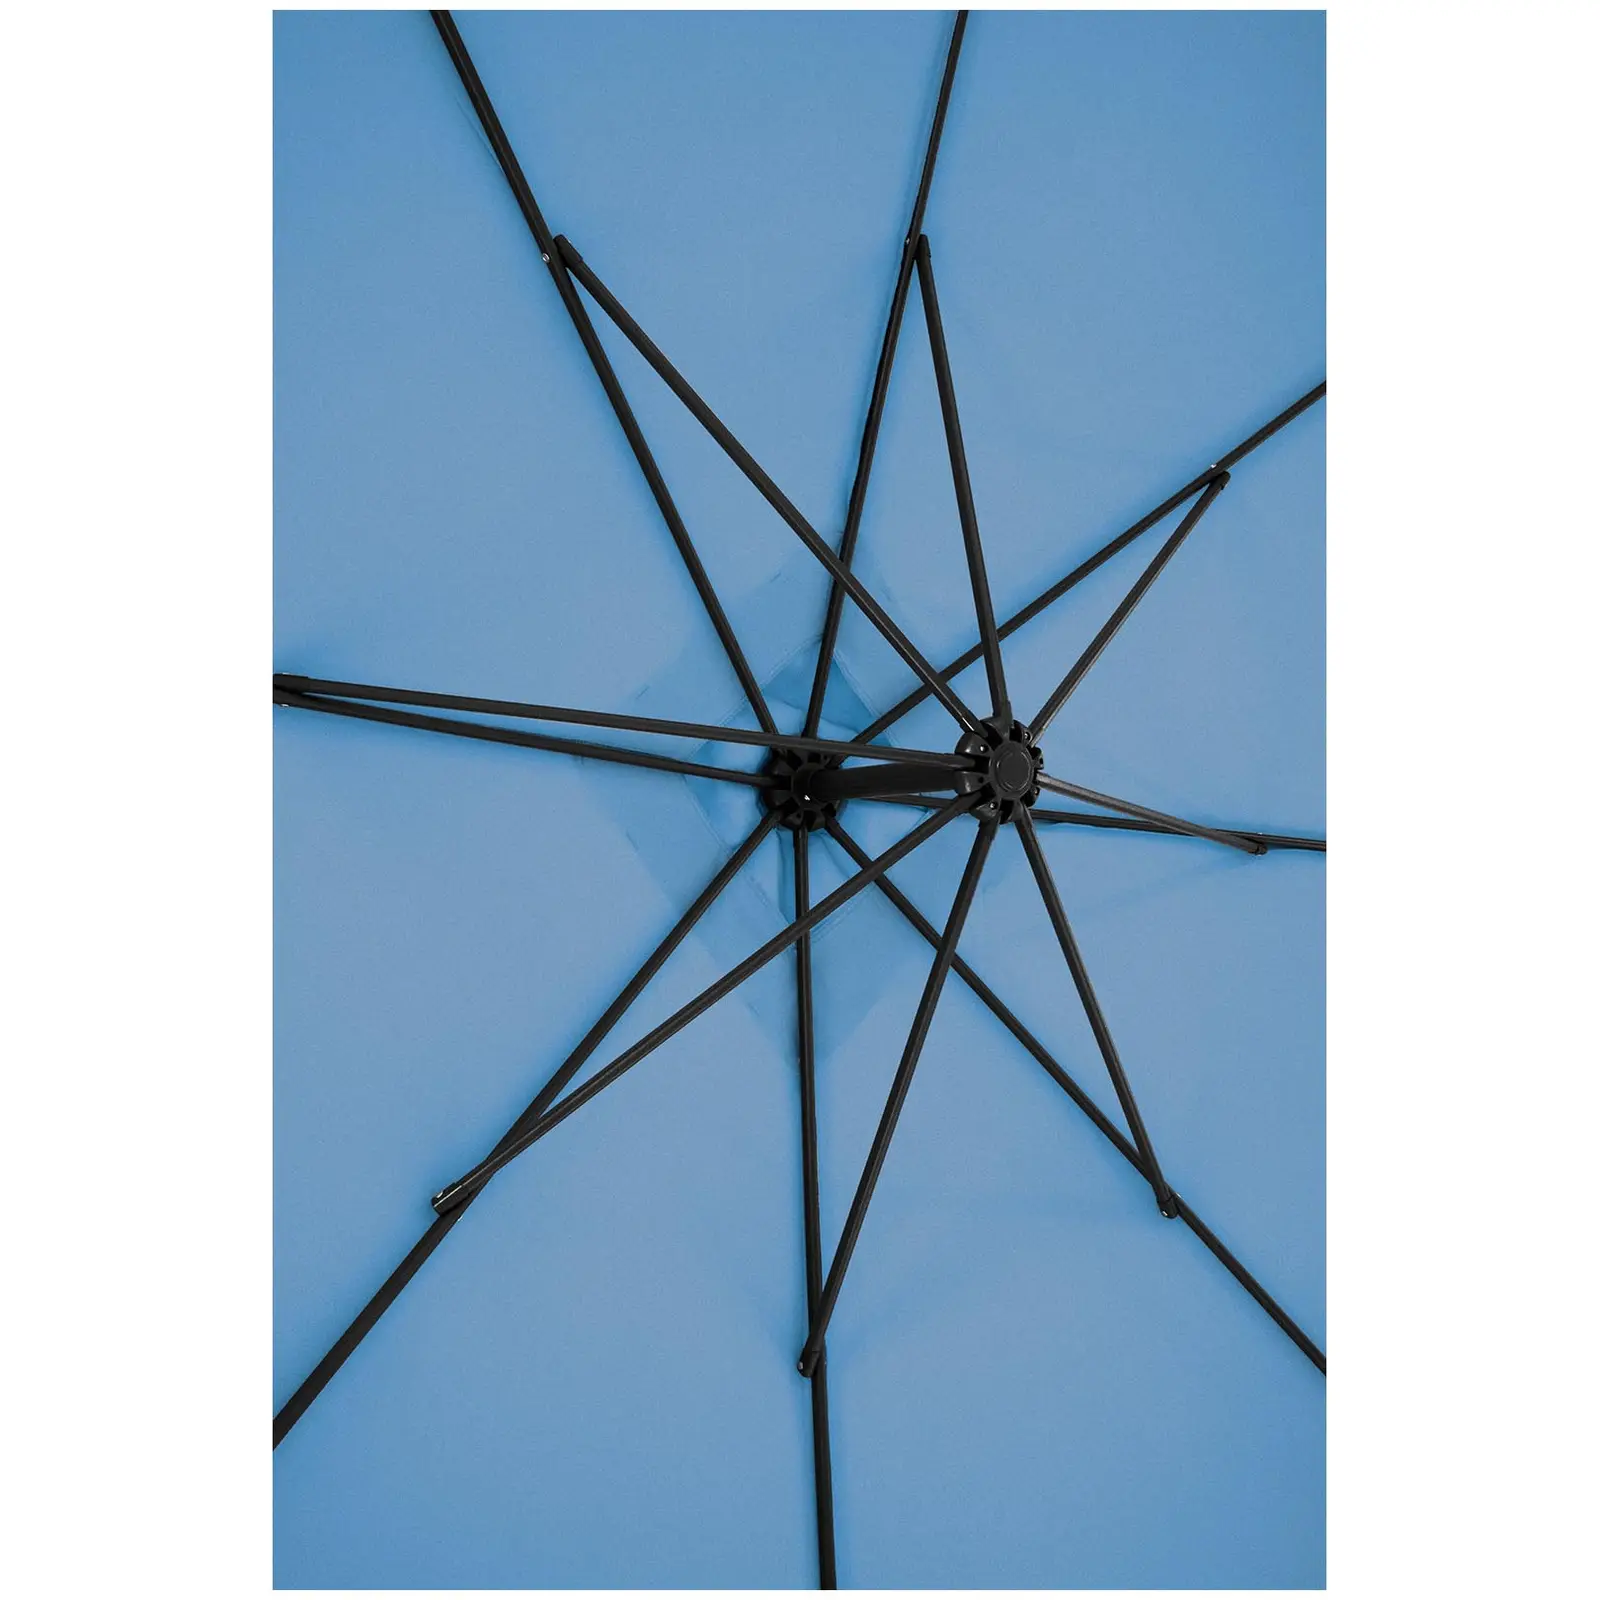 Andrahandssortering Hängparasoll - blått - fyrkantigt - 250 x 250 cm - kan lutas